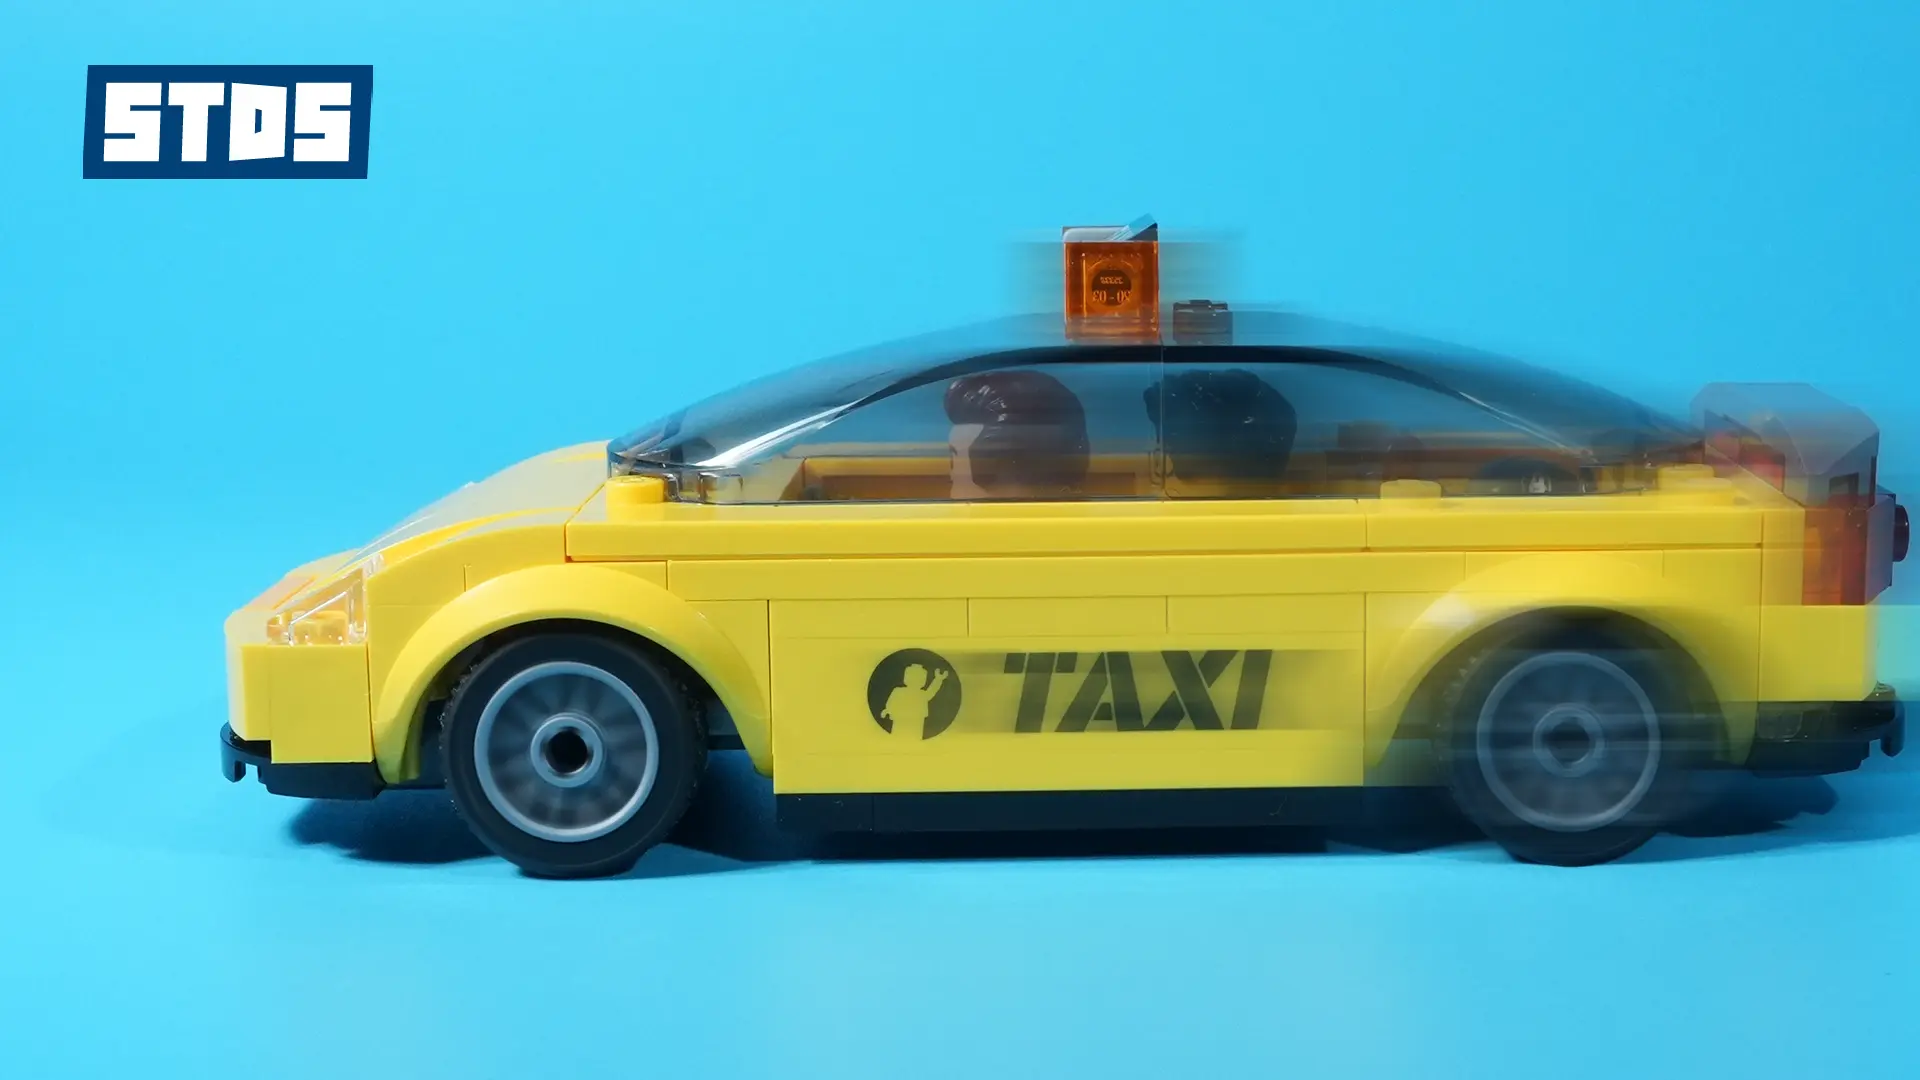 レゴ(R)レビュー『ブラックパンサー LEGO® マーベル タクシー(5008076)』動画あり、アベンジャーズ・タワー購入者限定プレゼント